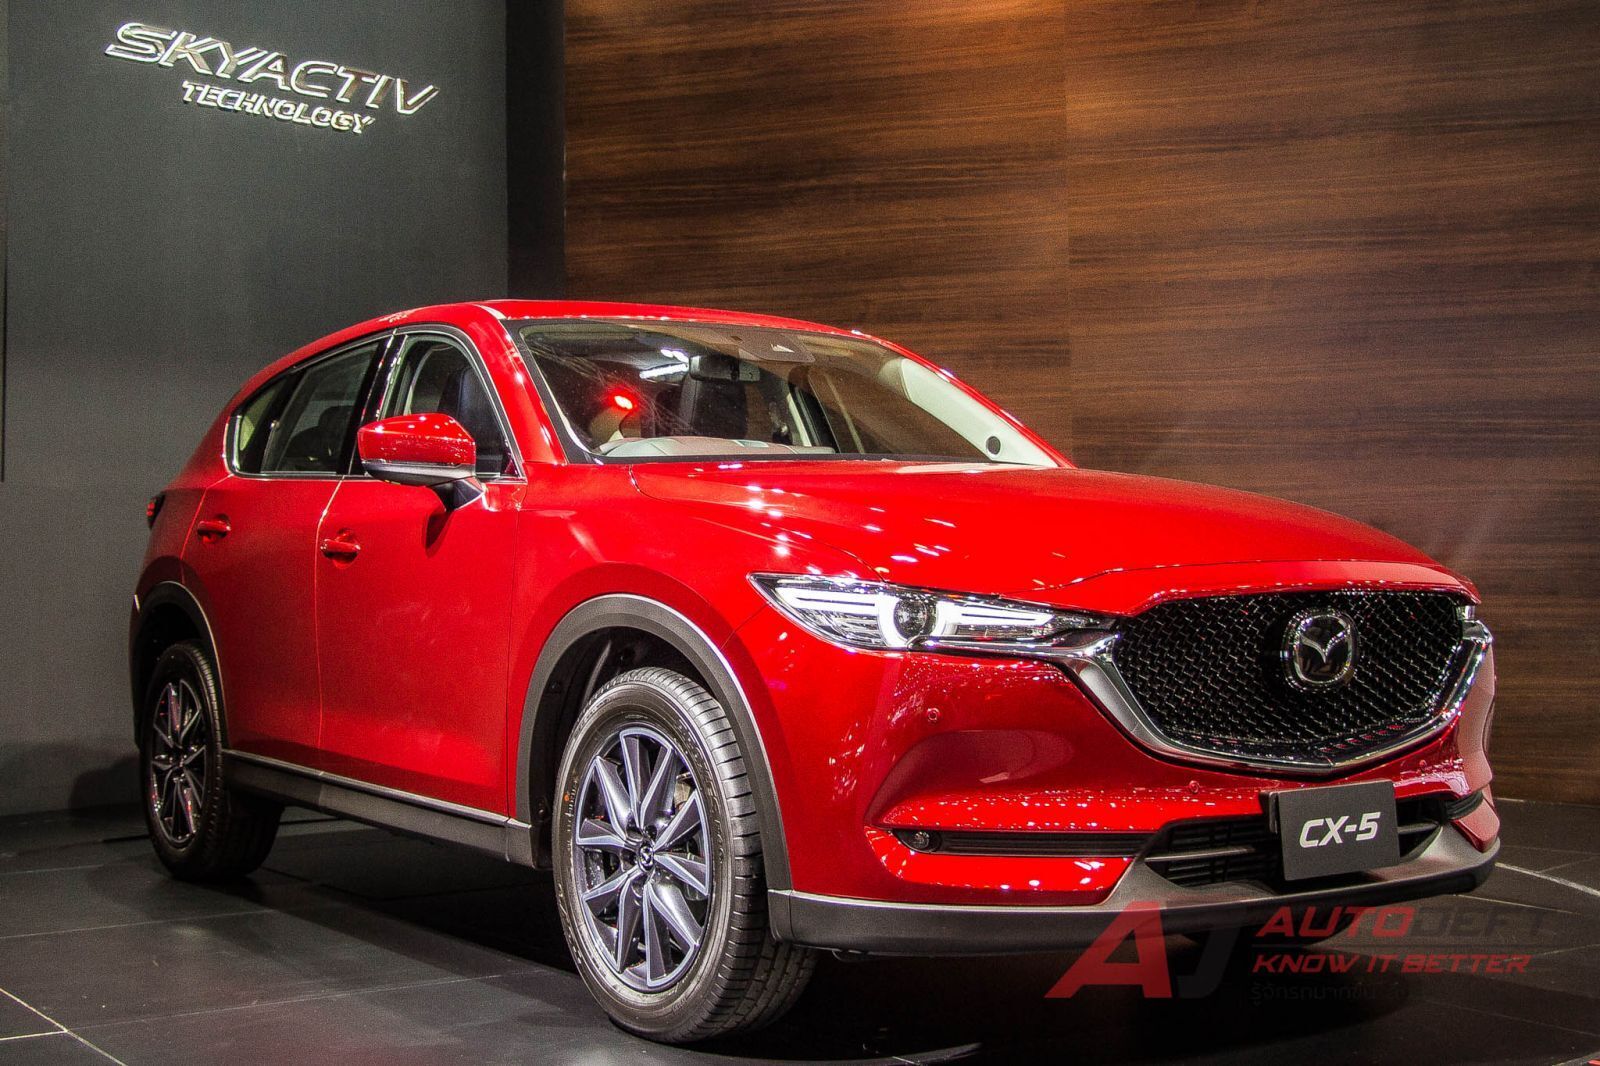 Mazda Motor Expo 2017